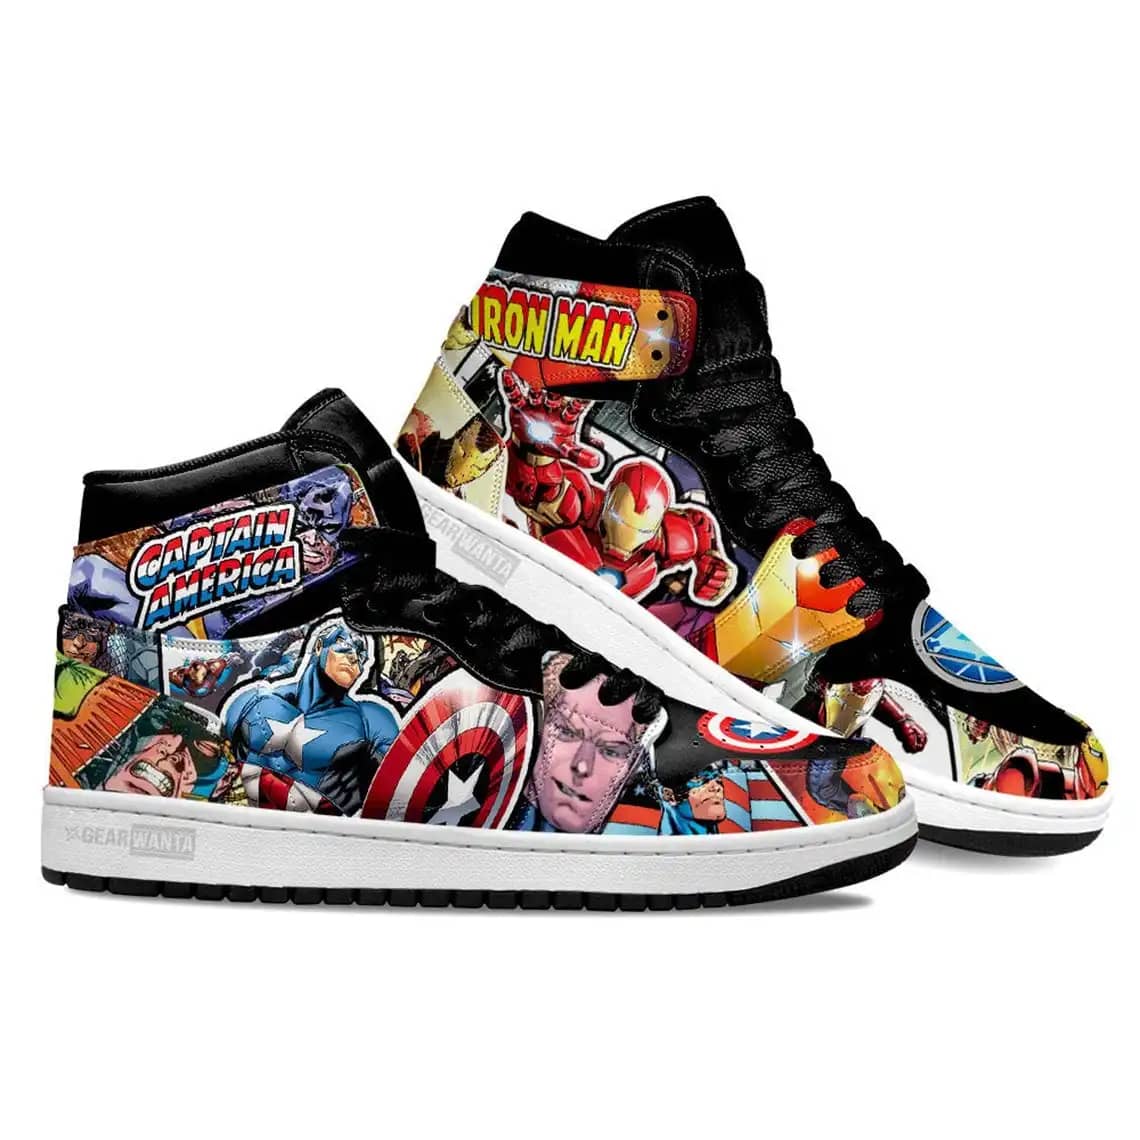 Avenger Ironman X Captain America Super Heroes For Movie Fans - Custom Anime Sneaker For Men And Women Air Jordan Shoes